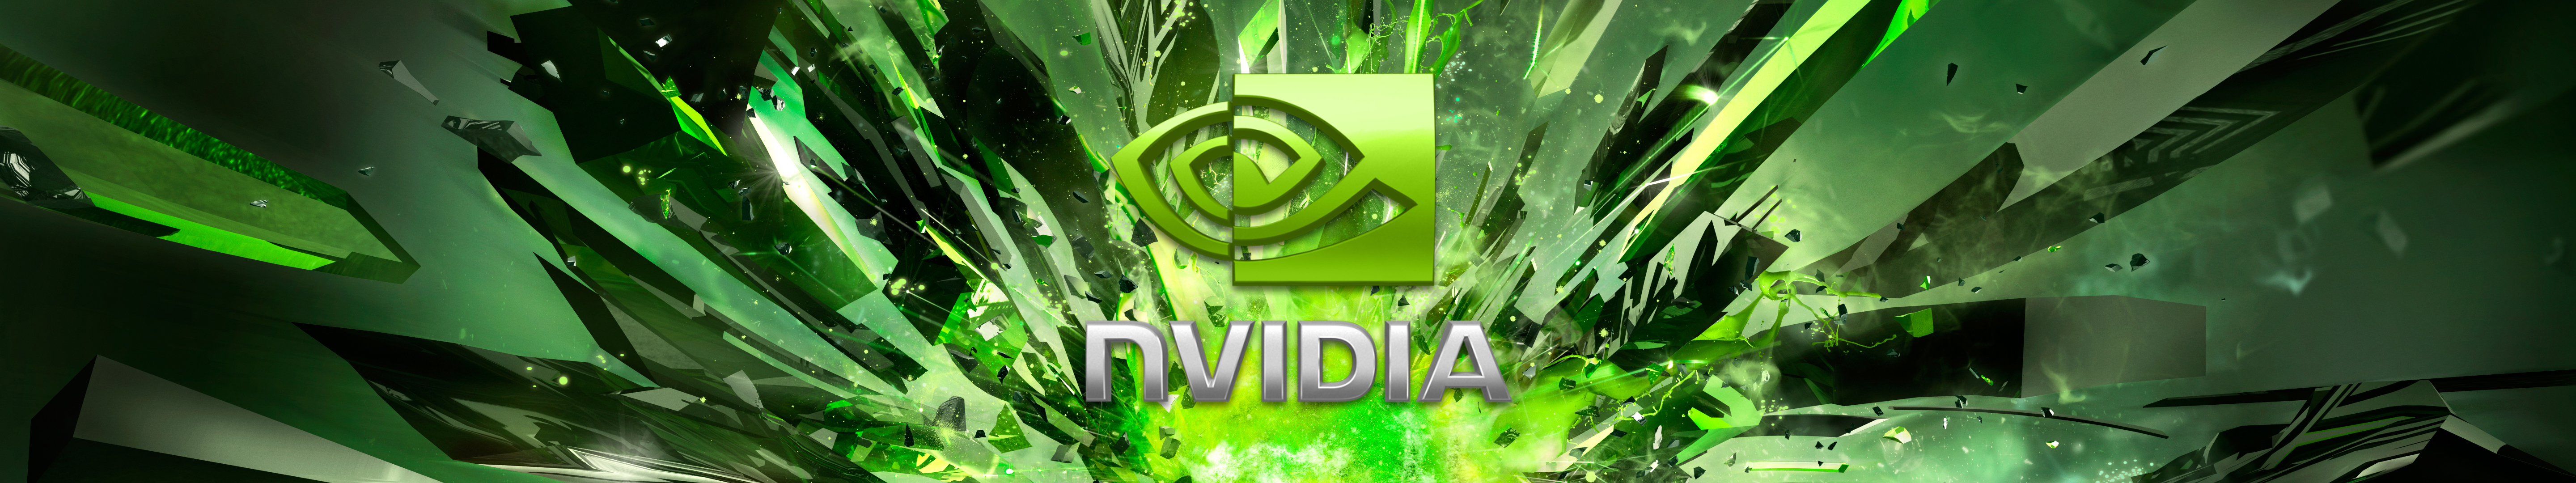 Nvidia Eyefinity Wallpaper